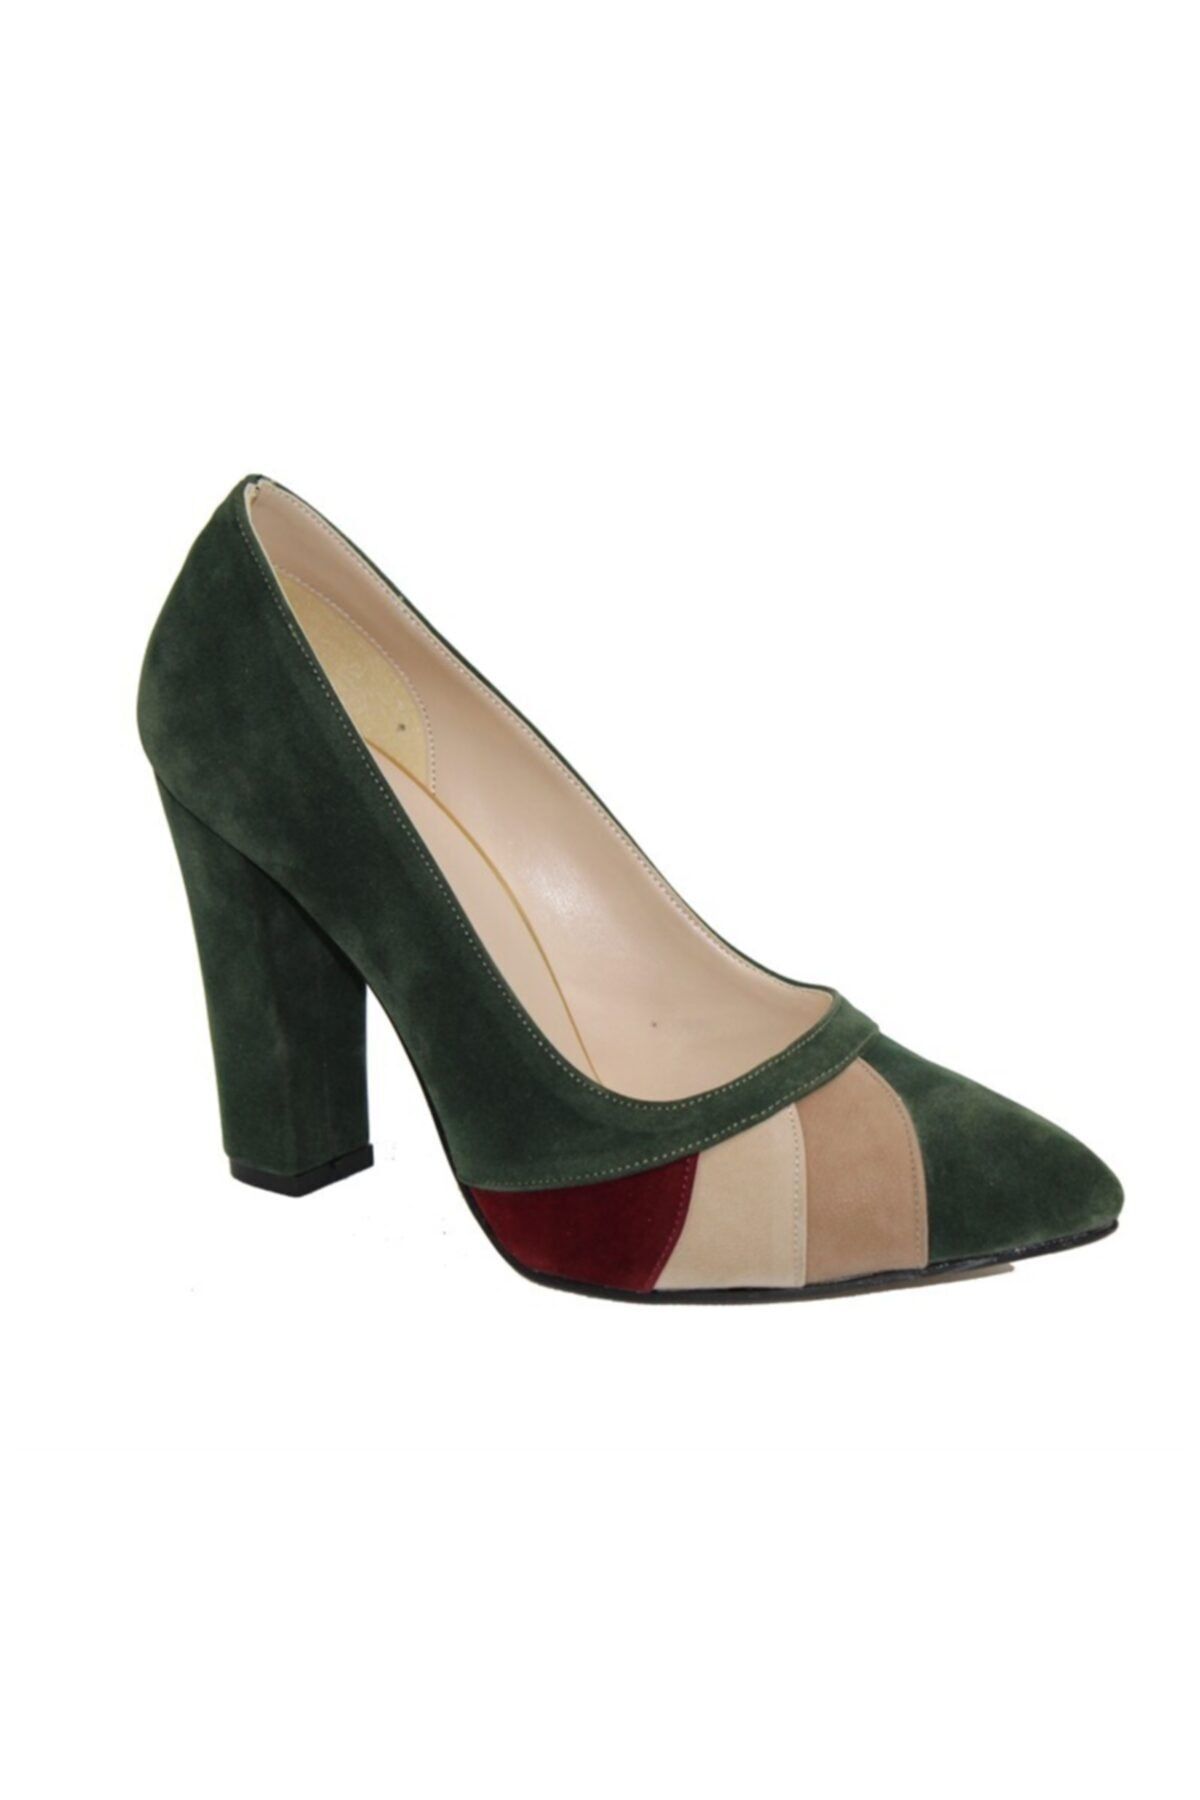 ARİNO Kadın Klasik Topuklu Ayakkabı Yeşil